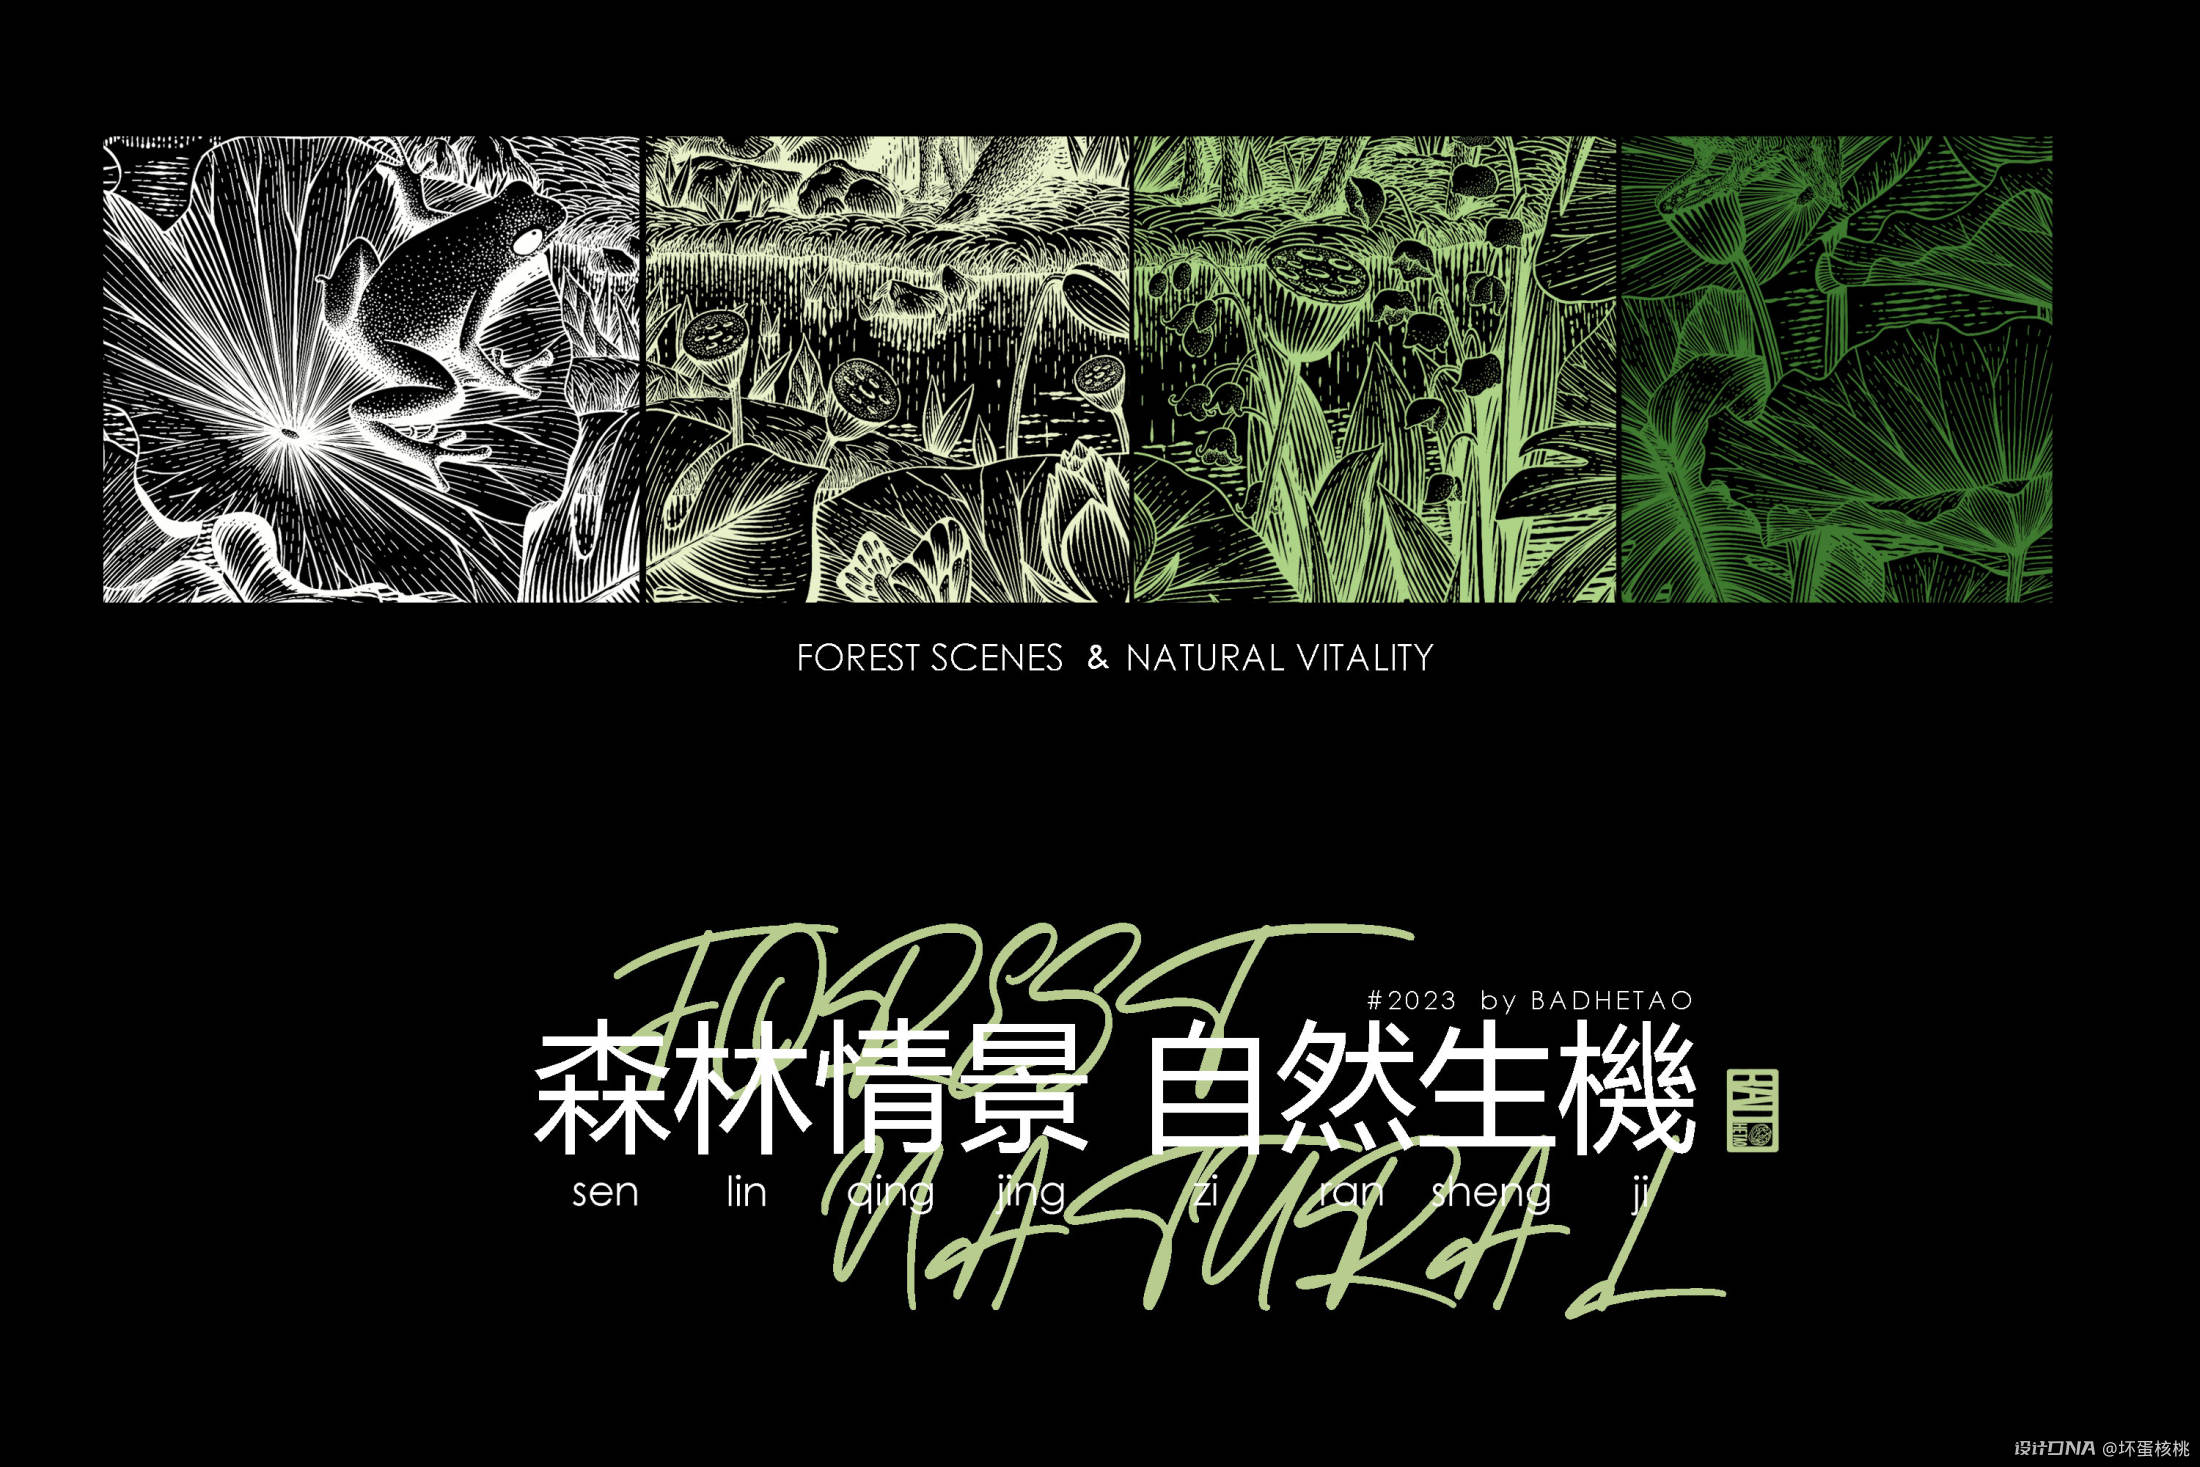 森林情景 自然生机|钢笔画风格包装插画 图1